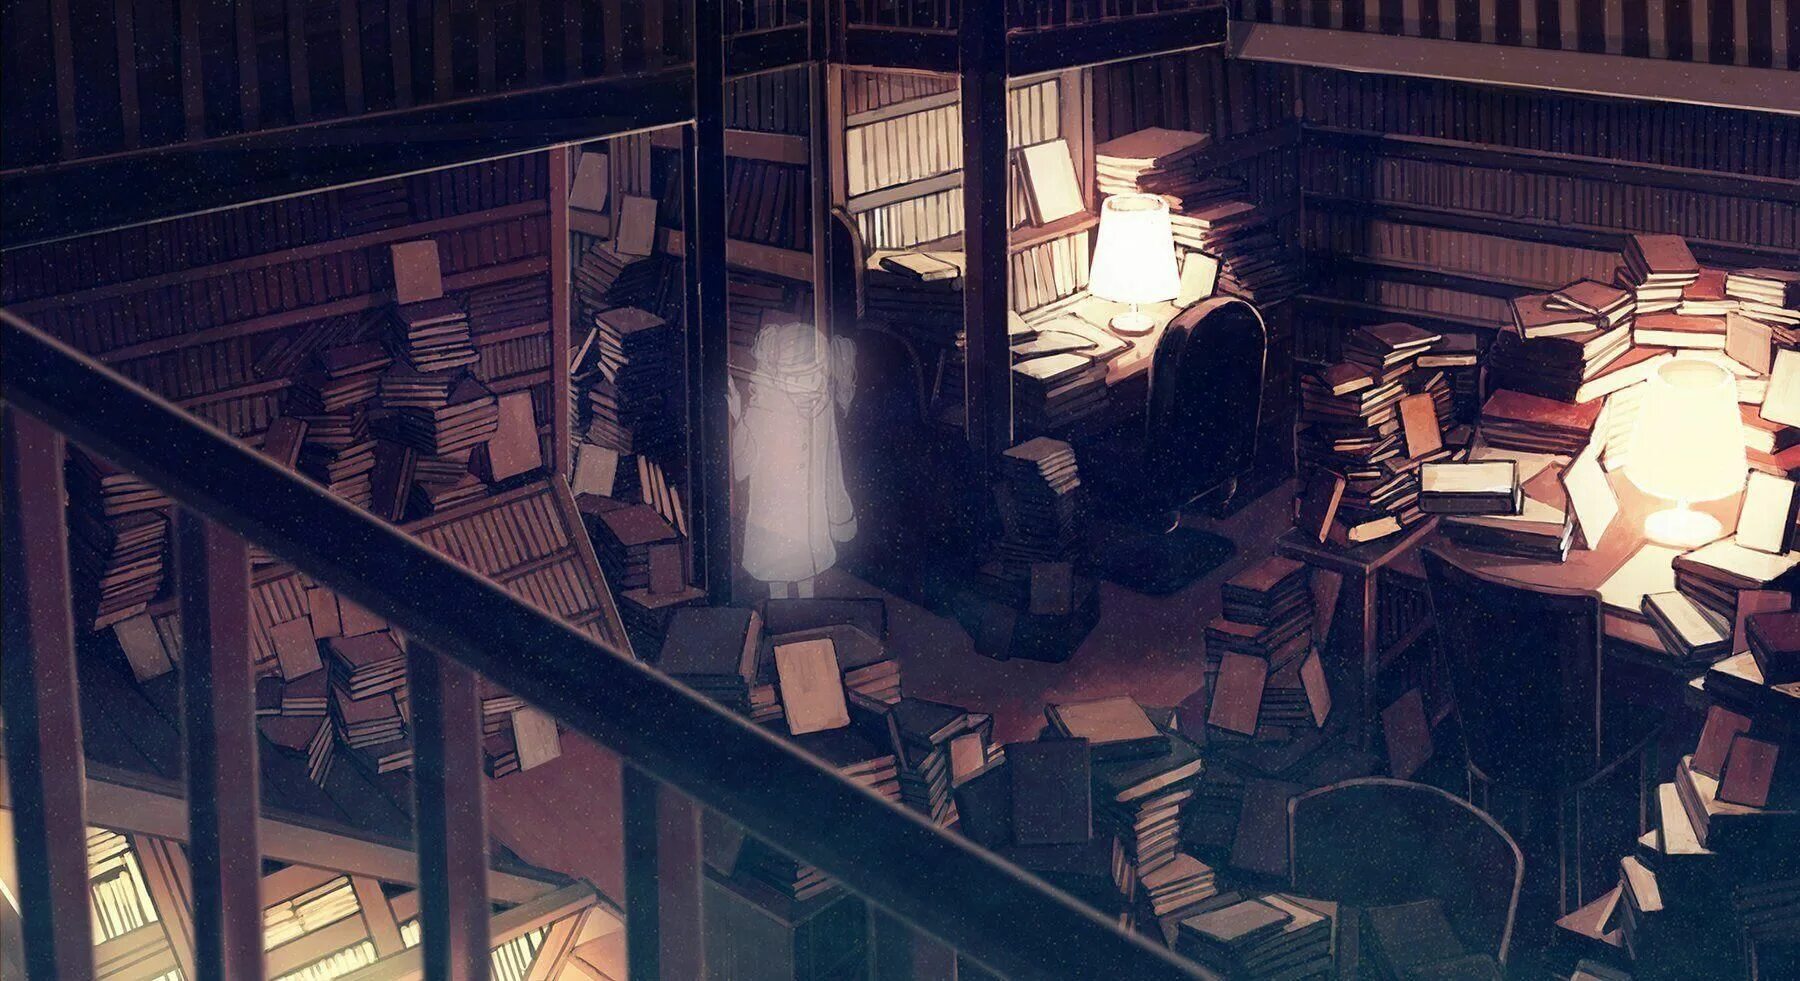 Ночной книжный магазин. Библиотека арт. Библиотека фон.